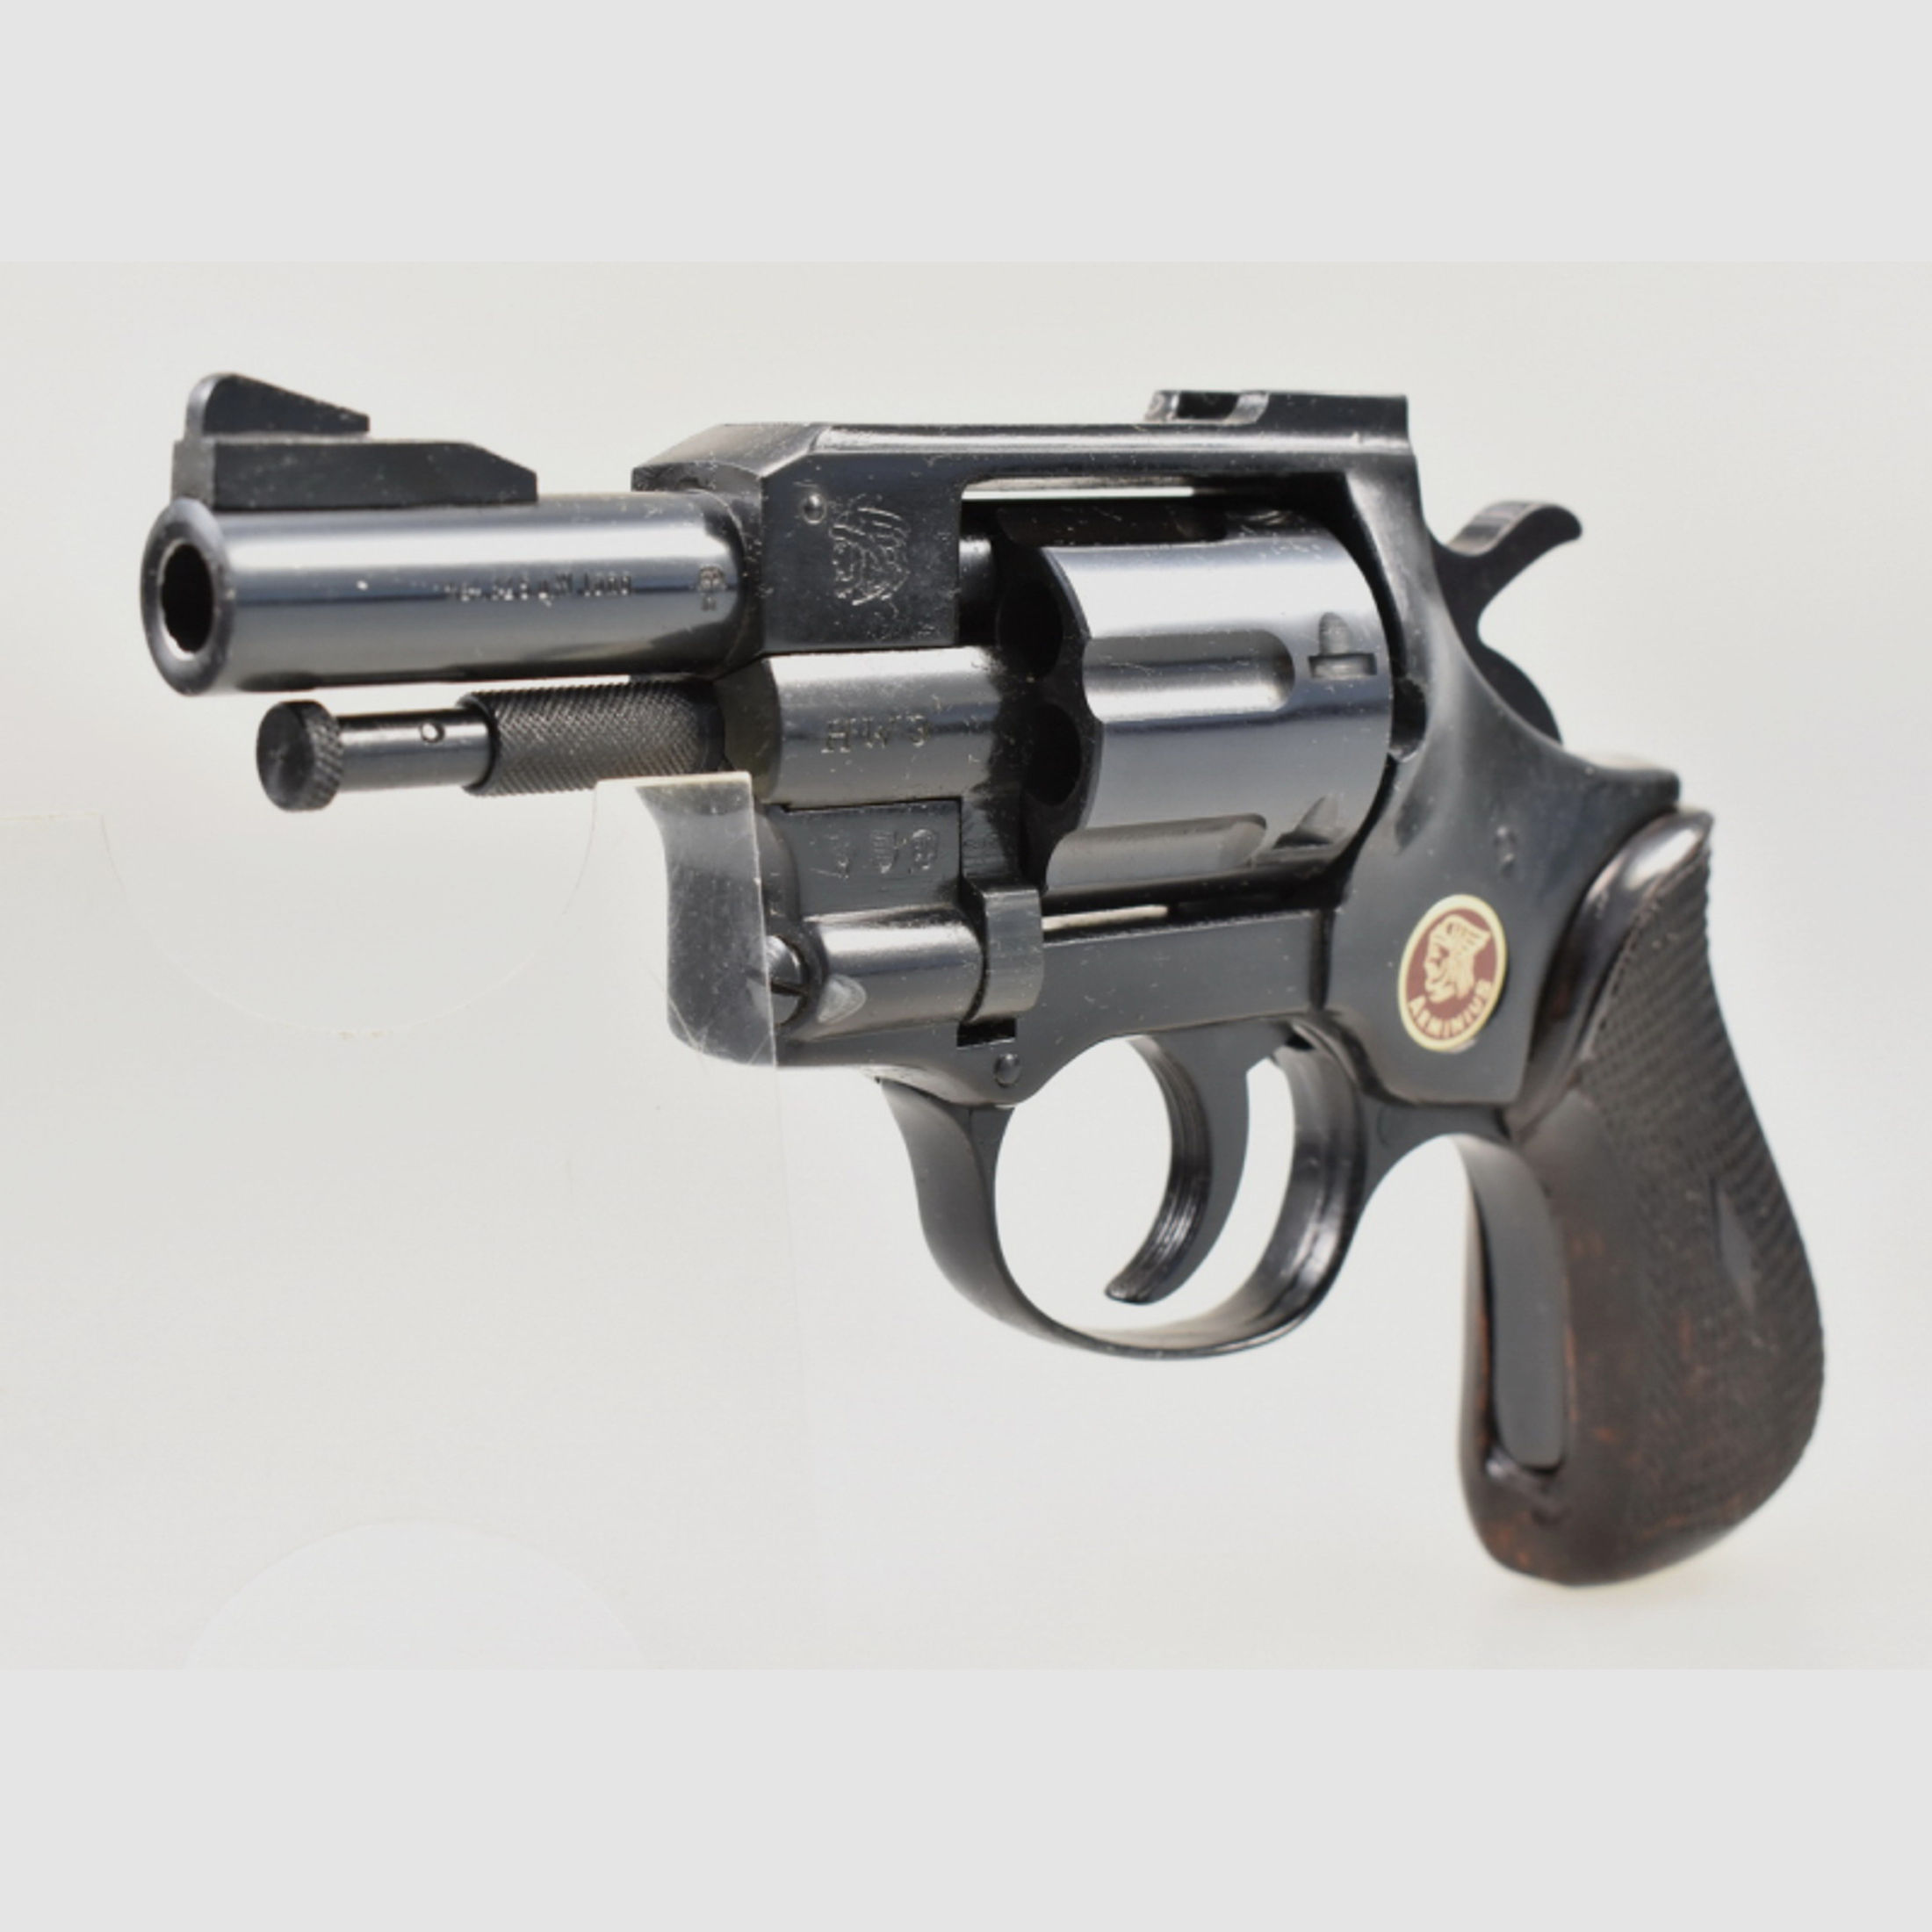 WEIHRAUCH / ARMINIUS Revolver Modell HW 3 mit 2,75" Lauf im Kaliber .32 S&W lang